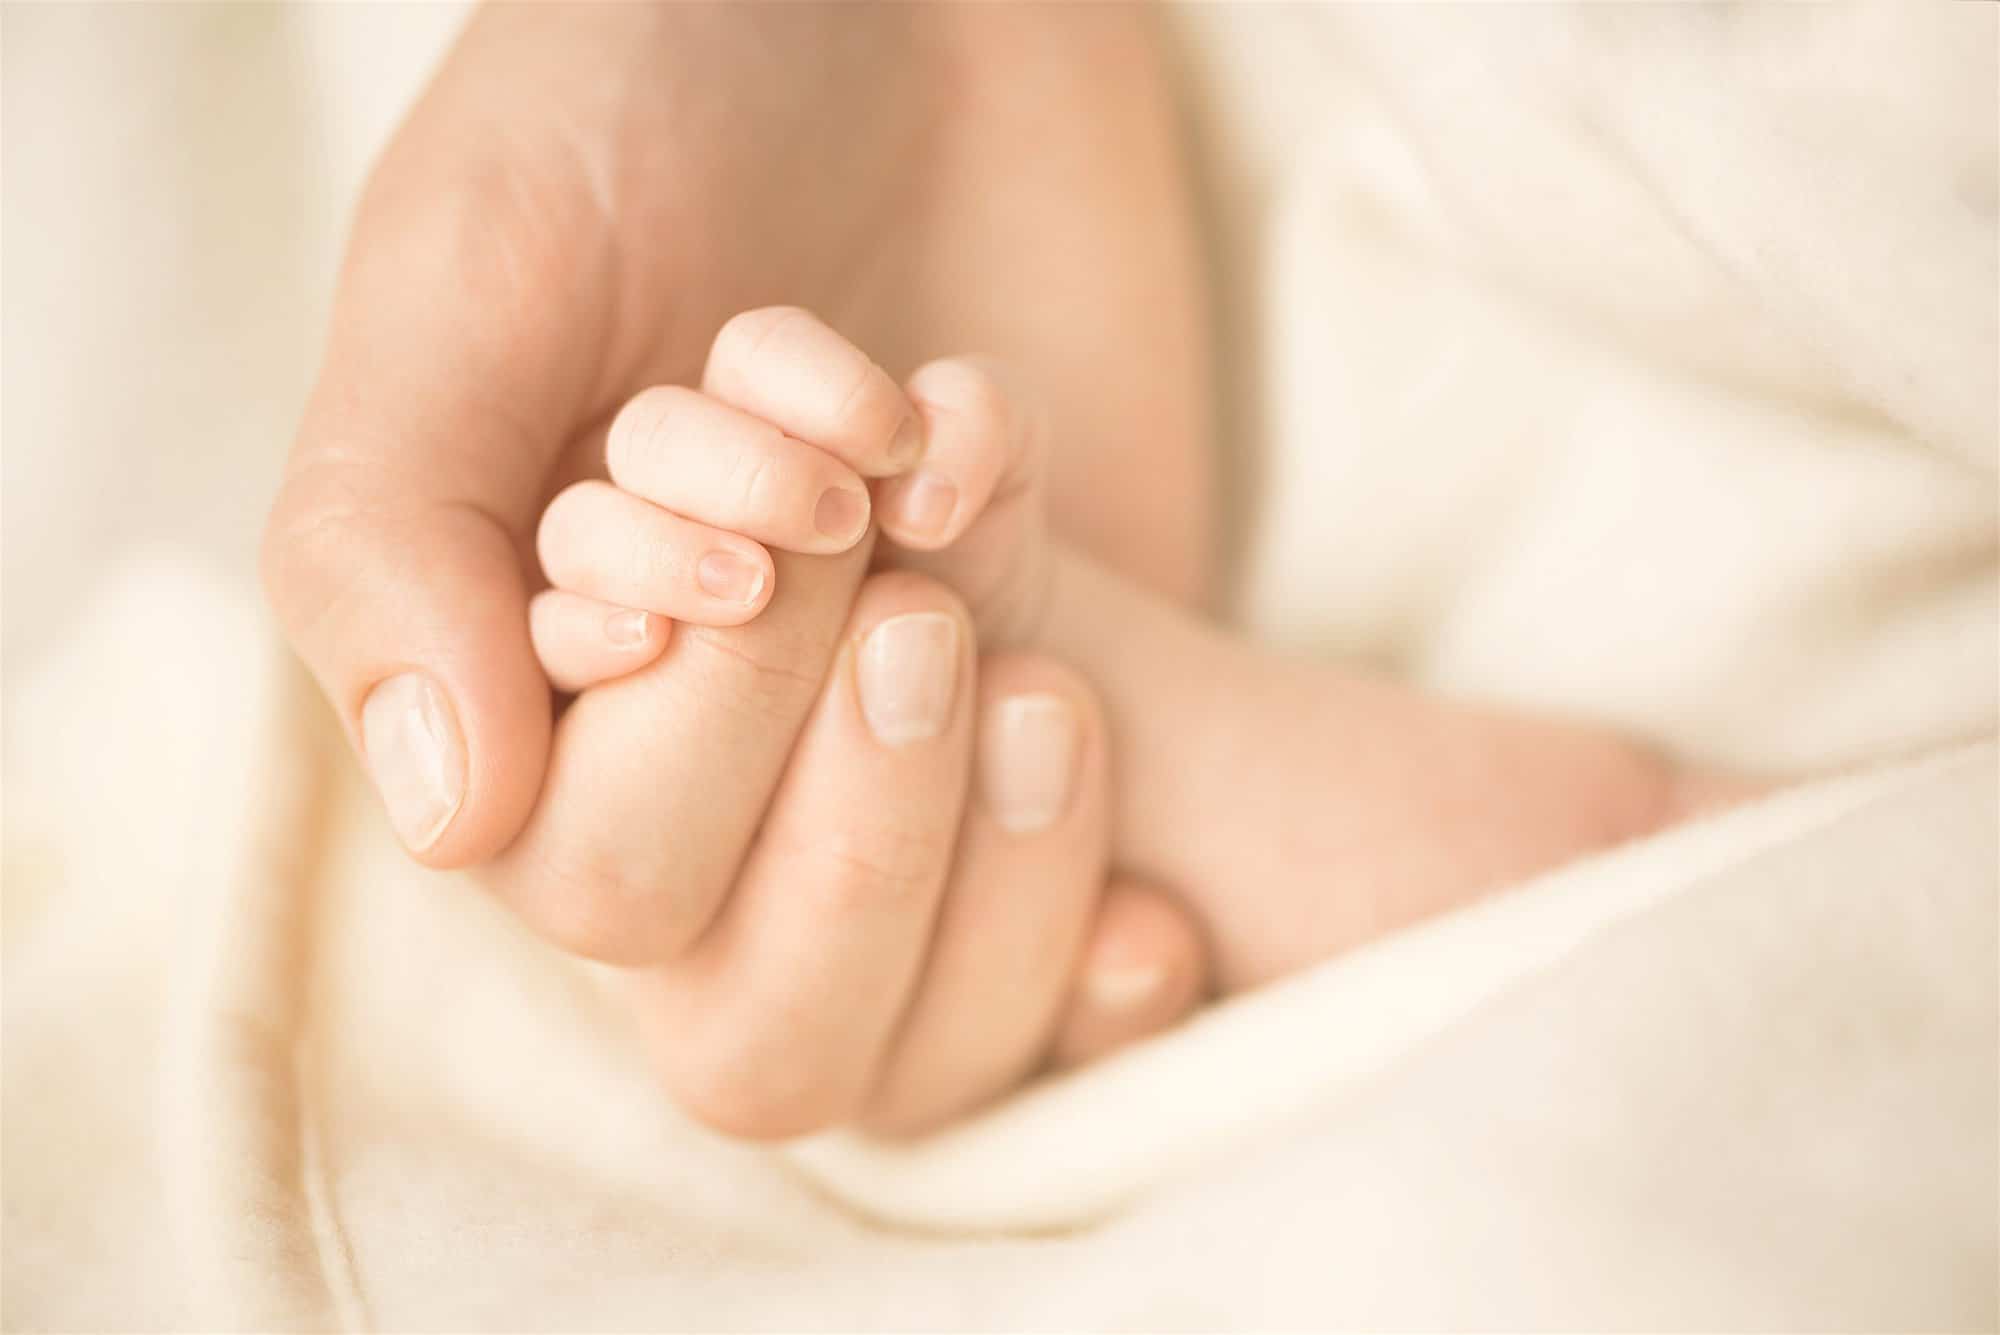 Cómo cortar las uñas del recién nacido - Criar con Sentido Común